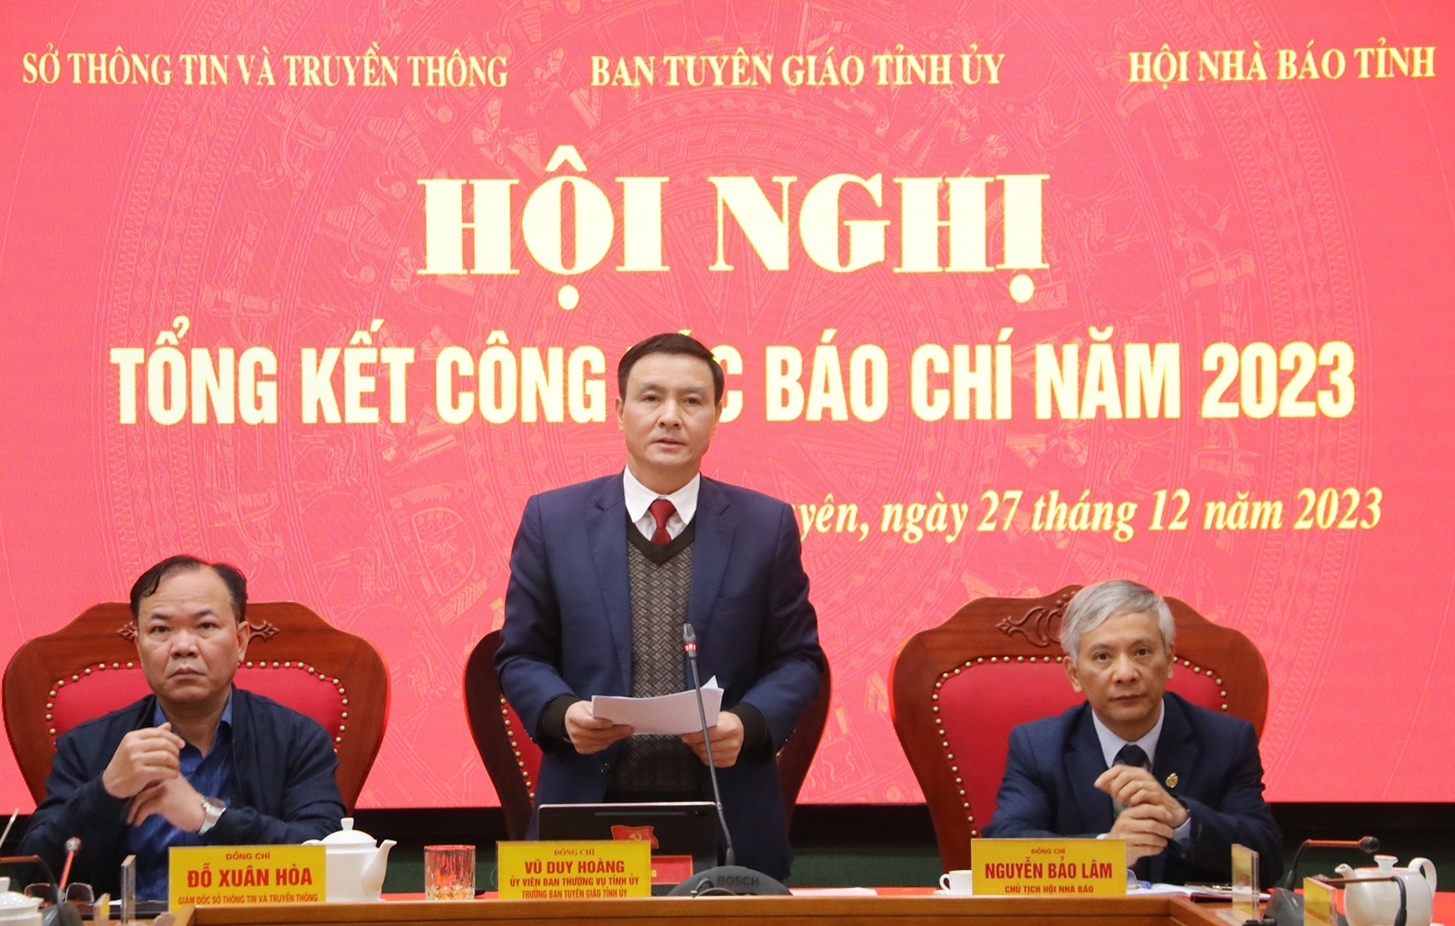 Ông Vũ Duy Hoàng - Trưởng Ban Tuyên giáo Tỉnh ủy tỉnh Thái Nguyên (đứng giữa) chủ trì Hội nghị